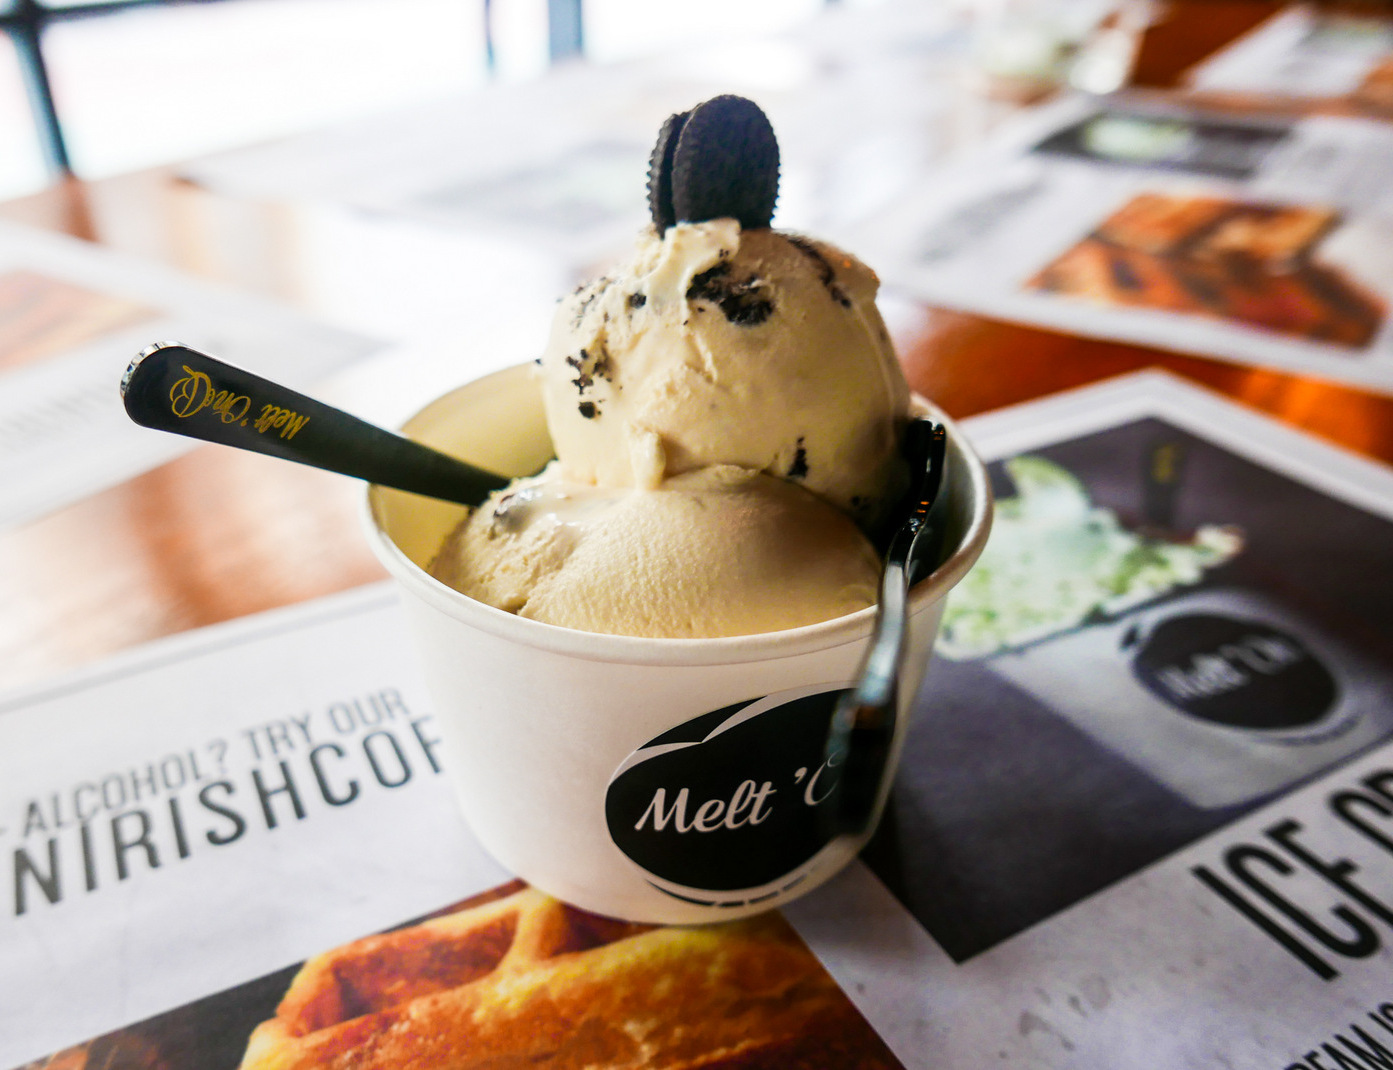 2. Melt'On Ice Cream